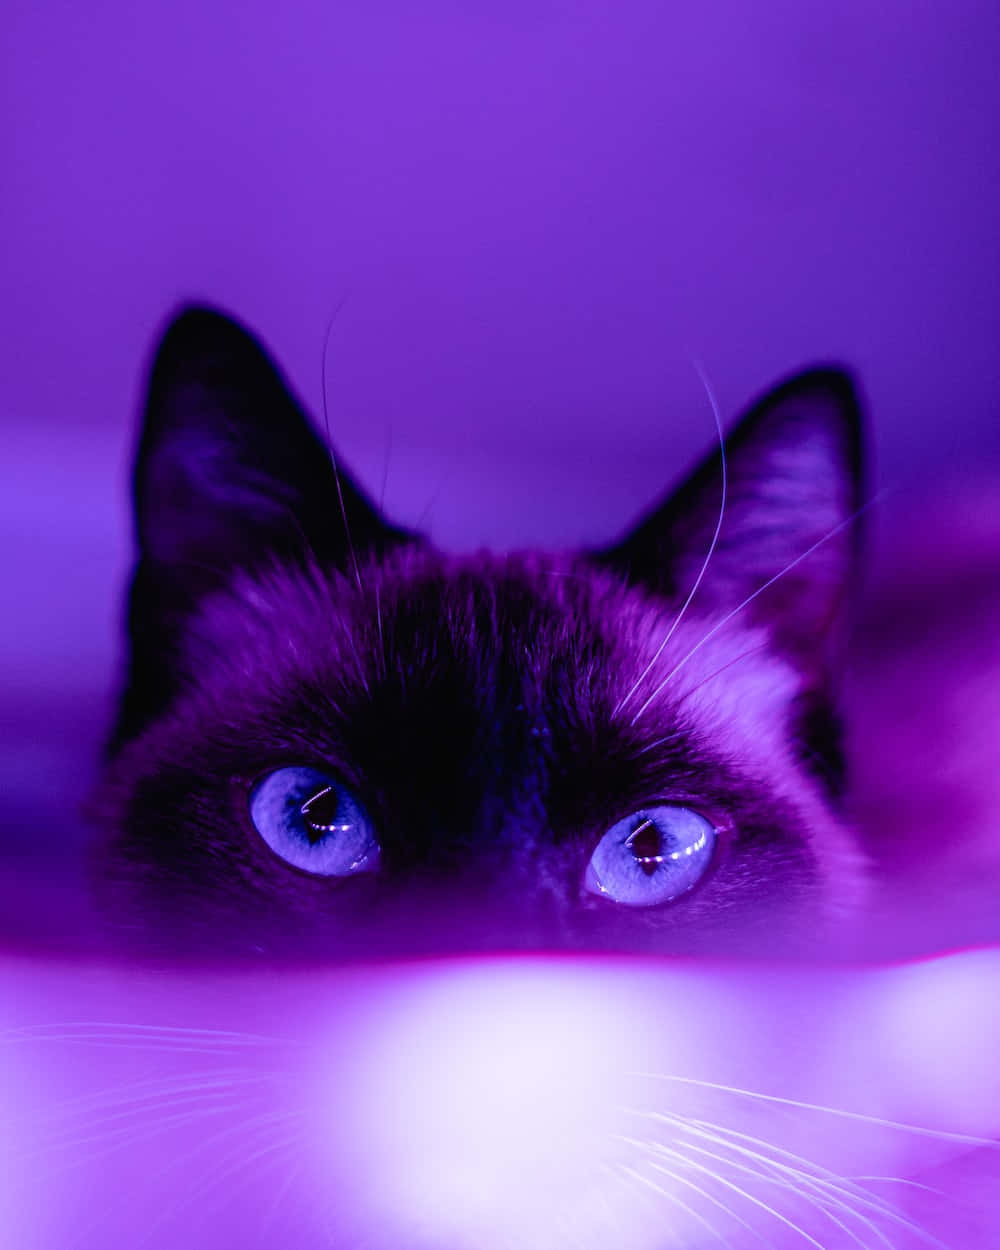 Dark Aesthetic Cat In Purple Picture